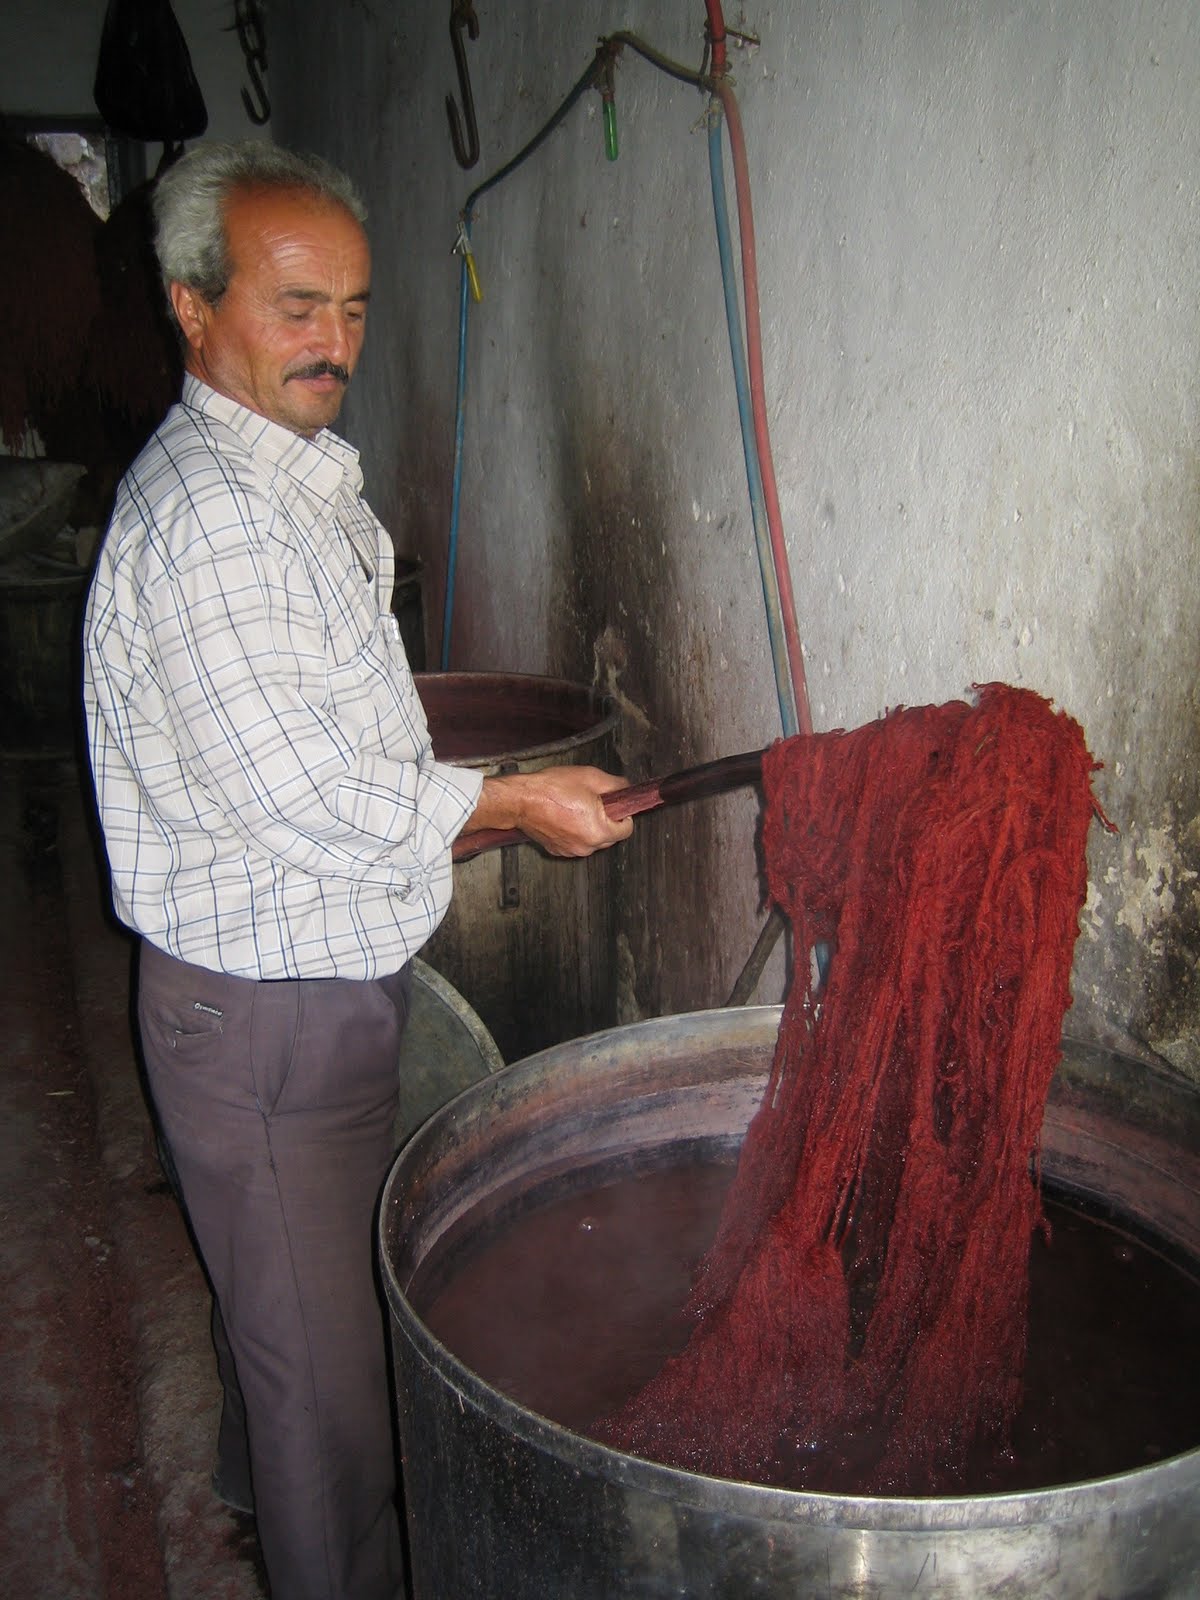 Red dyeing process in Örselli village, Manisa, Western Turkey, 2007